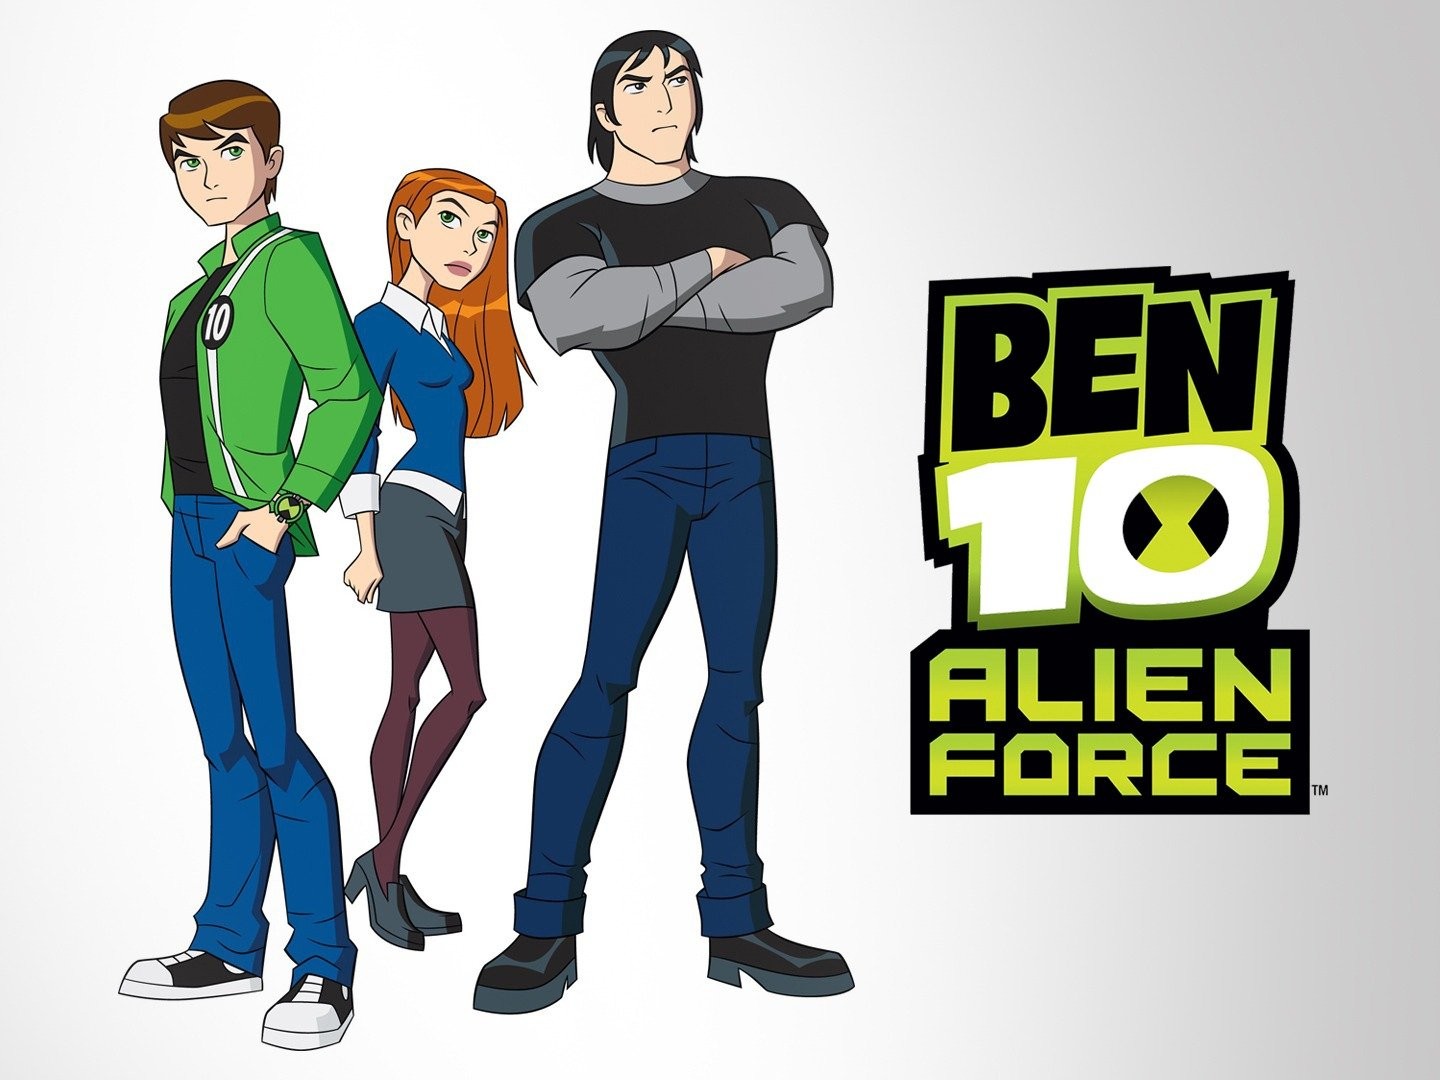 Ben 10 and aliens